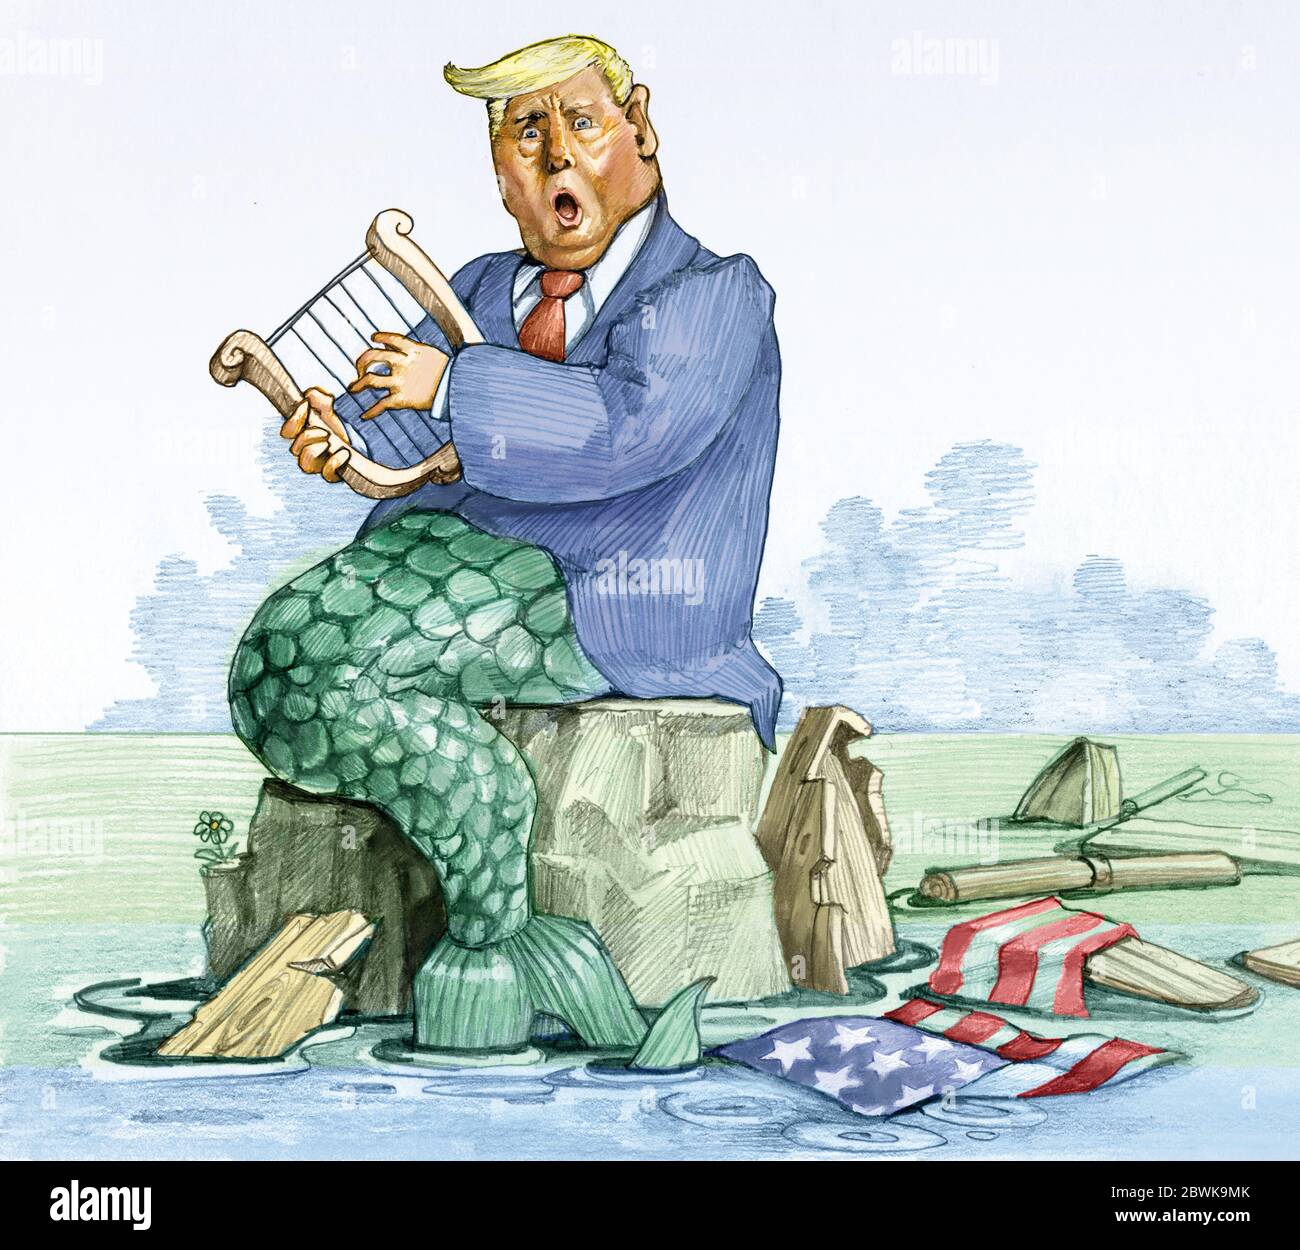 trump ist eine Meerjungfrau das Boot mit der amerikanischen Flagge brach auf der Klippe eine Metapher für die Zerstörung, die dieser Präsident in sein Land bringt Stockfoto